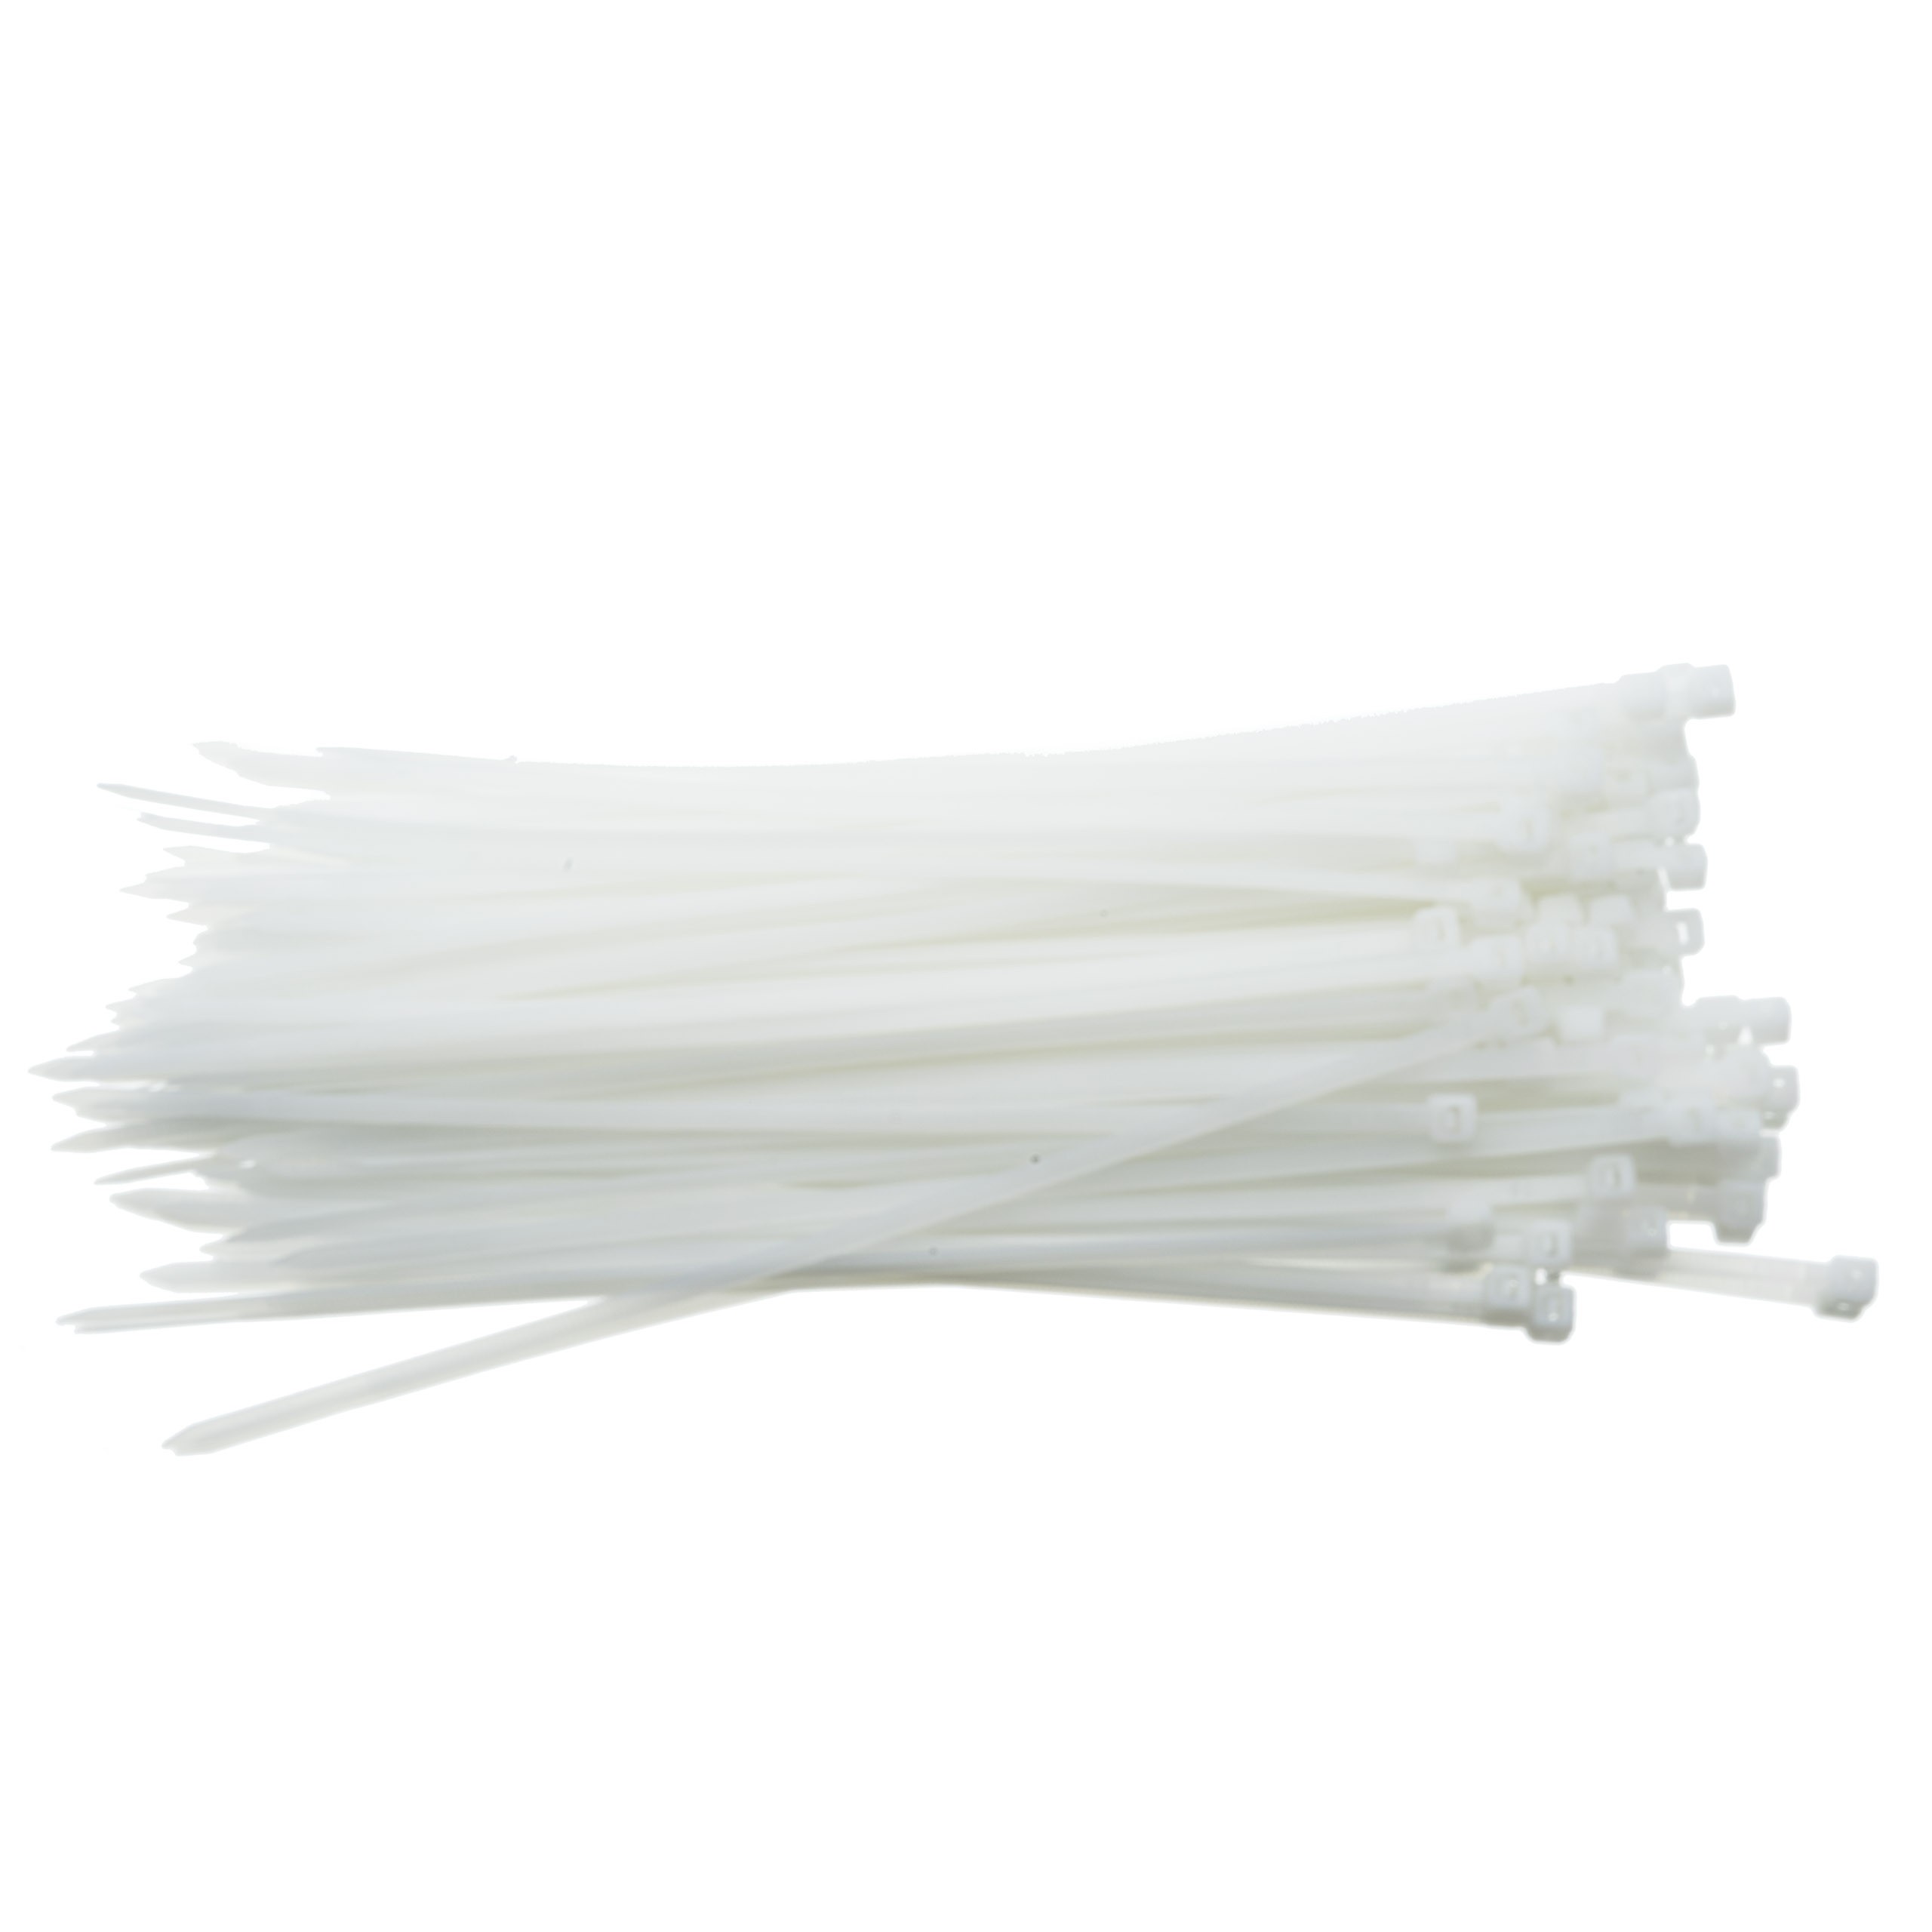 Kabelbinders / Tiewraps 3.5*200 - 100 stuks